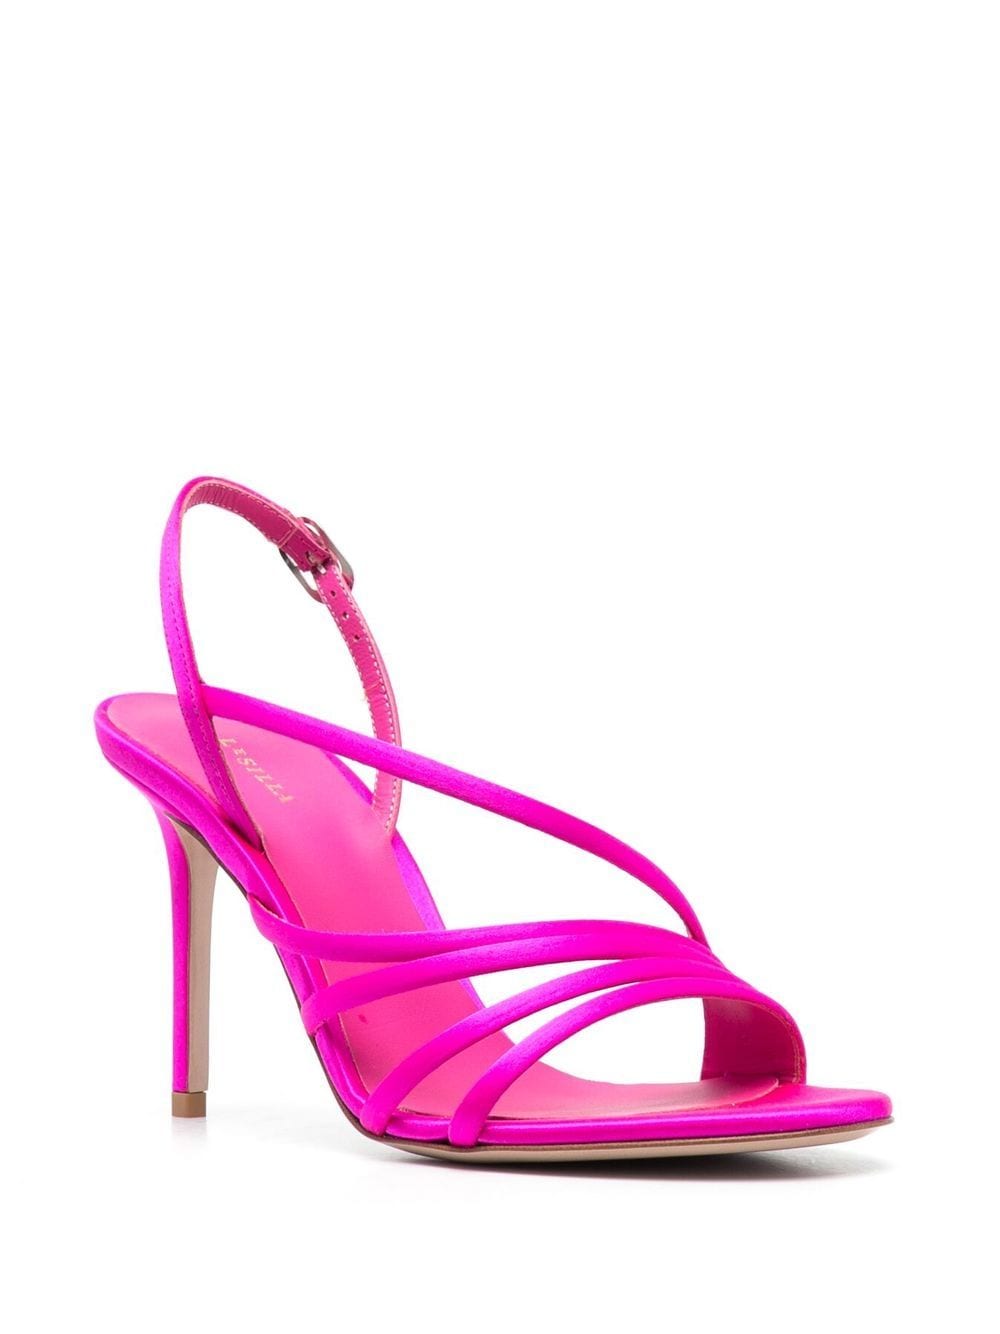 Shop Le Silla 100mm Strappy Stiletto Sandals In Rosa